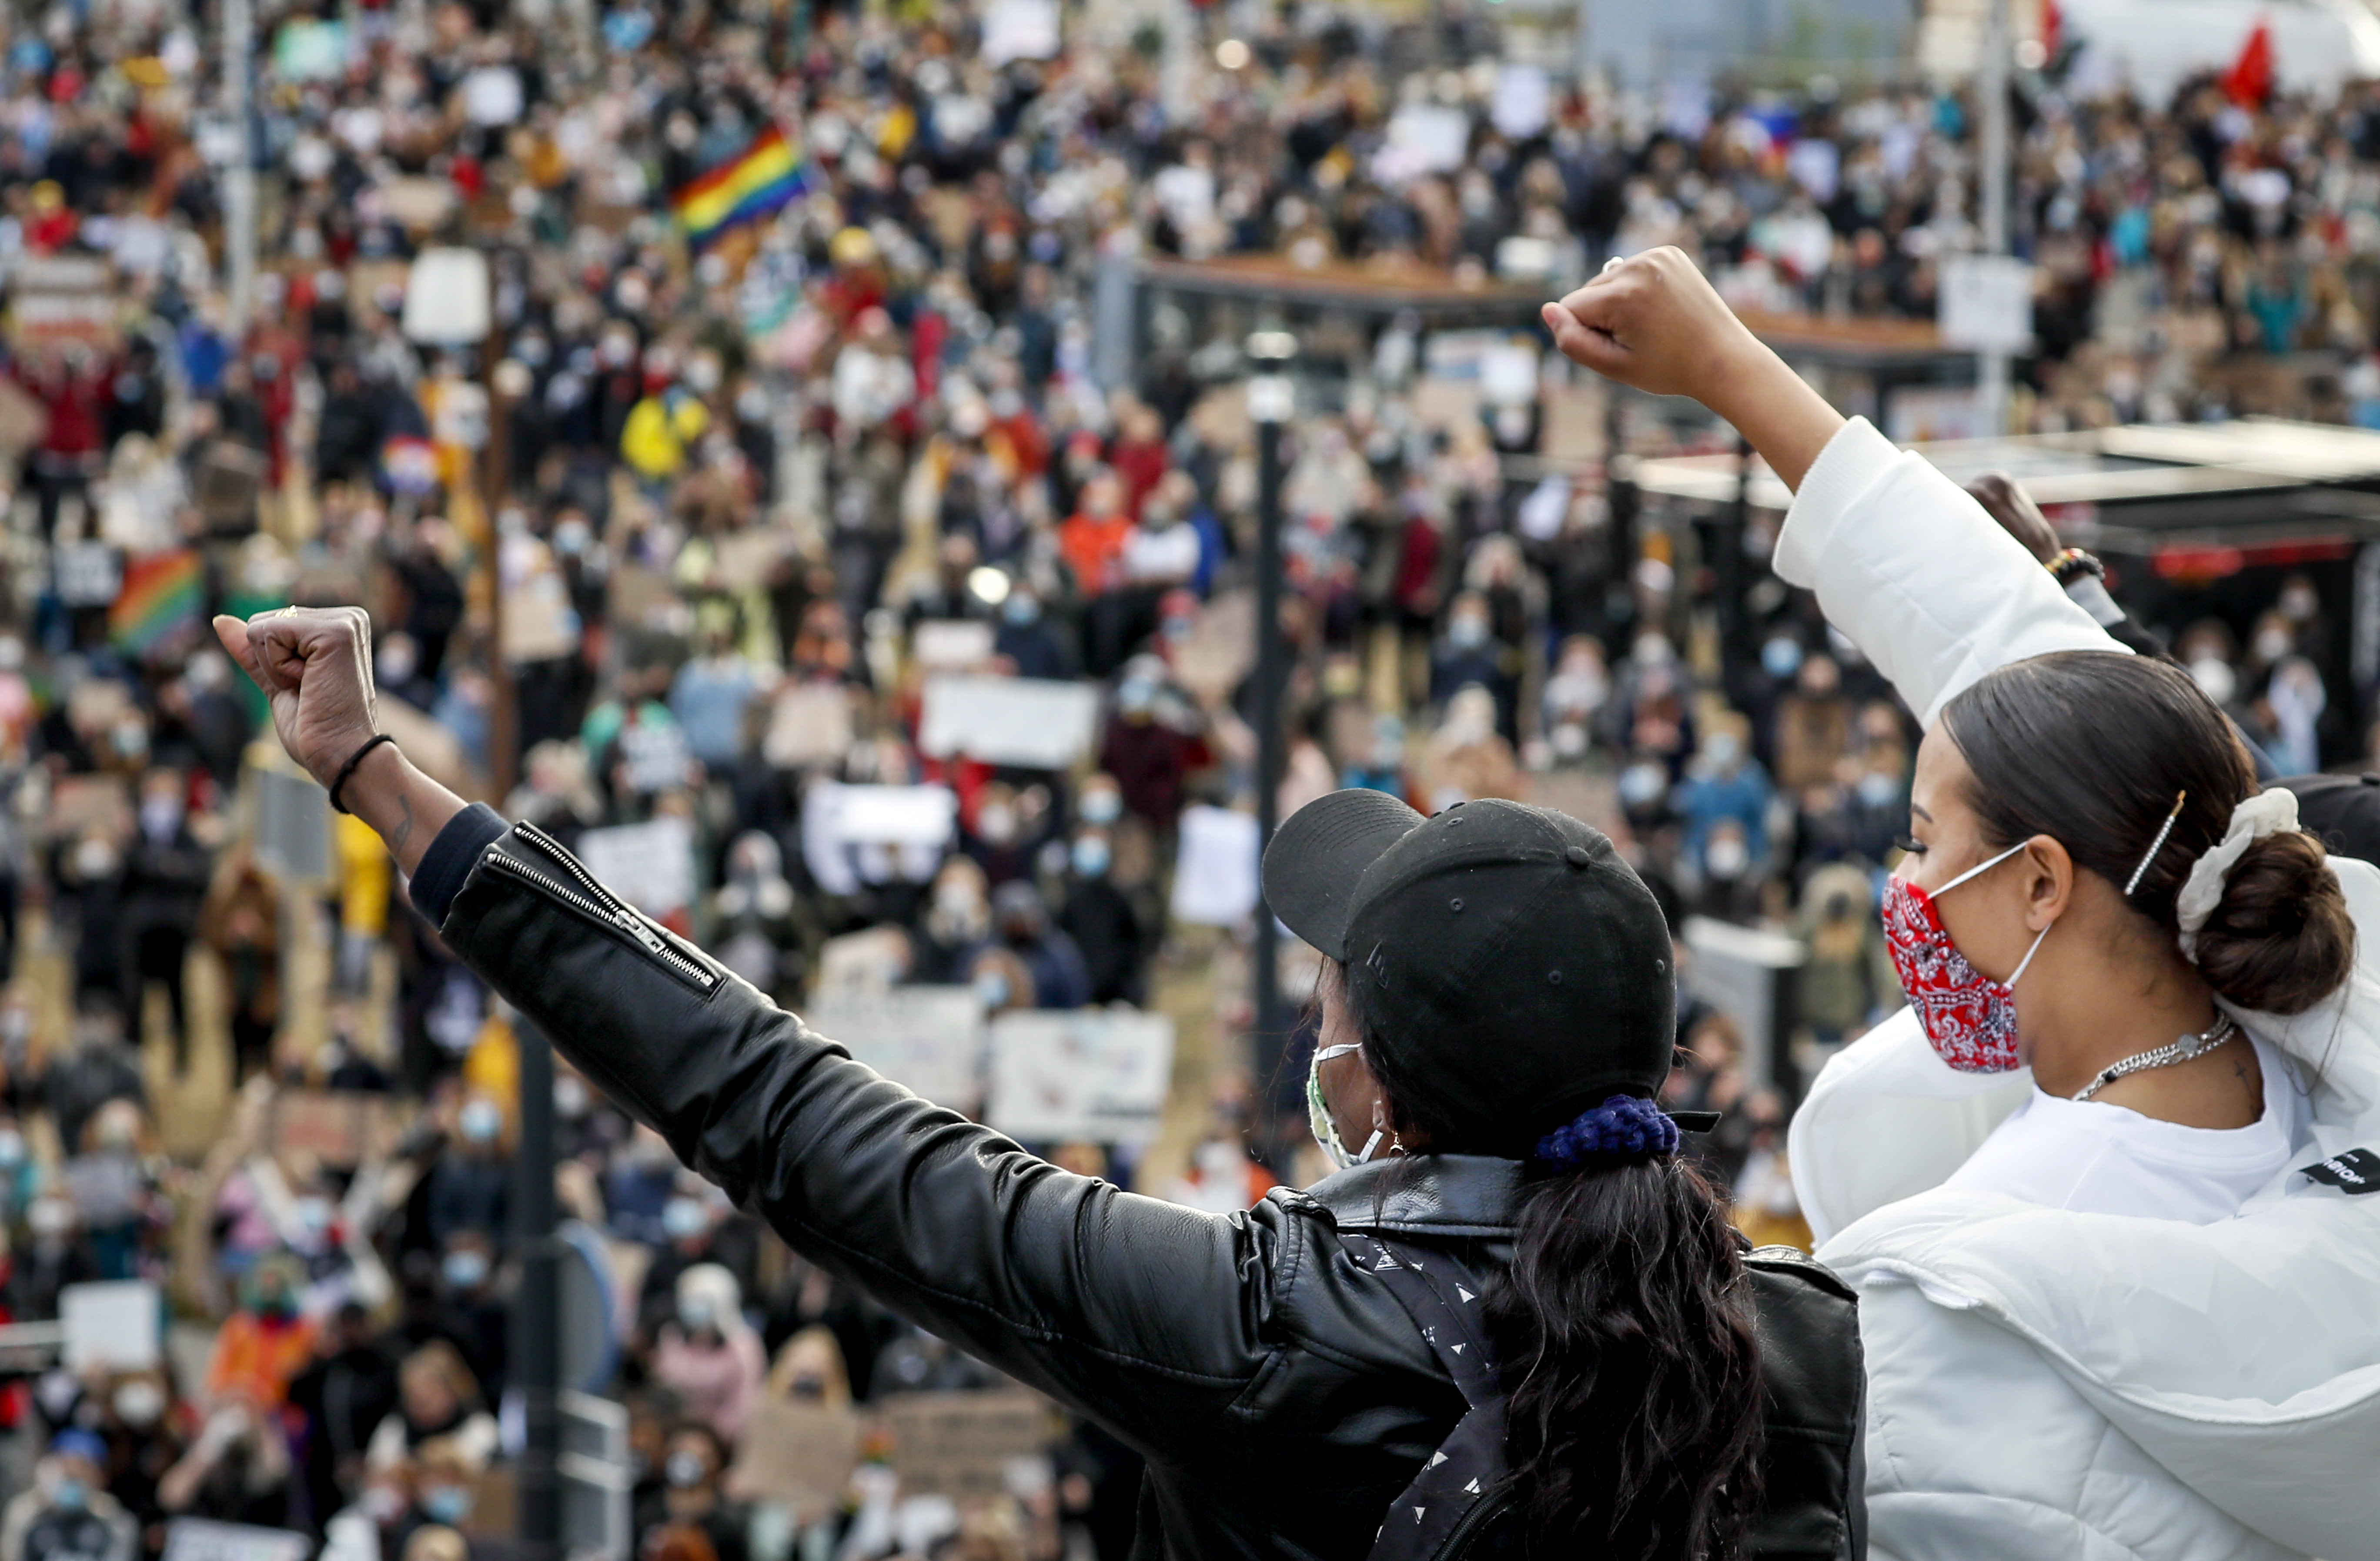 Demonstraties in utrecht nijmegen enschede voor black lives matters verlopen nat, maar rustig